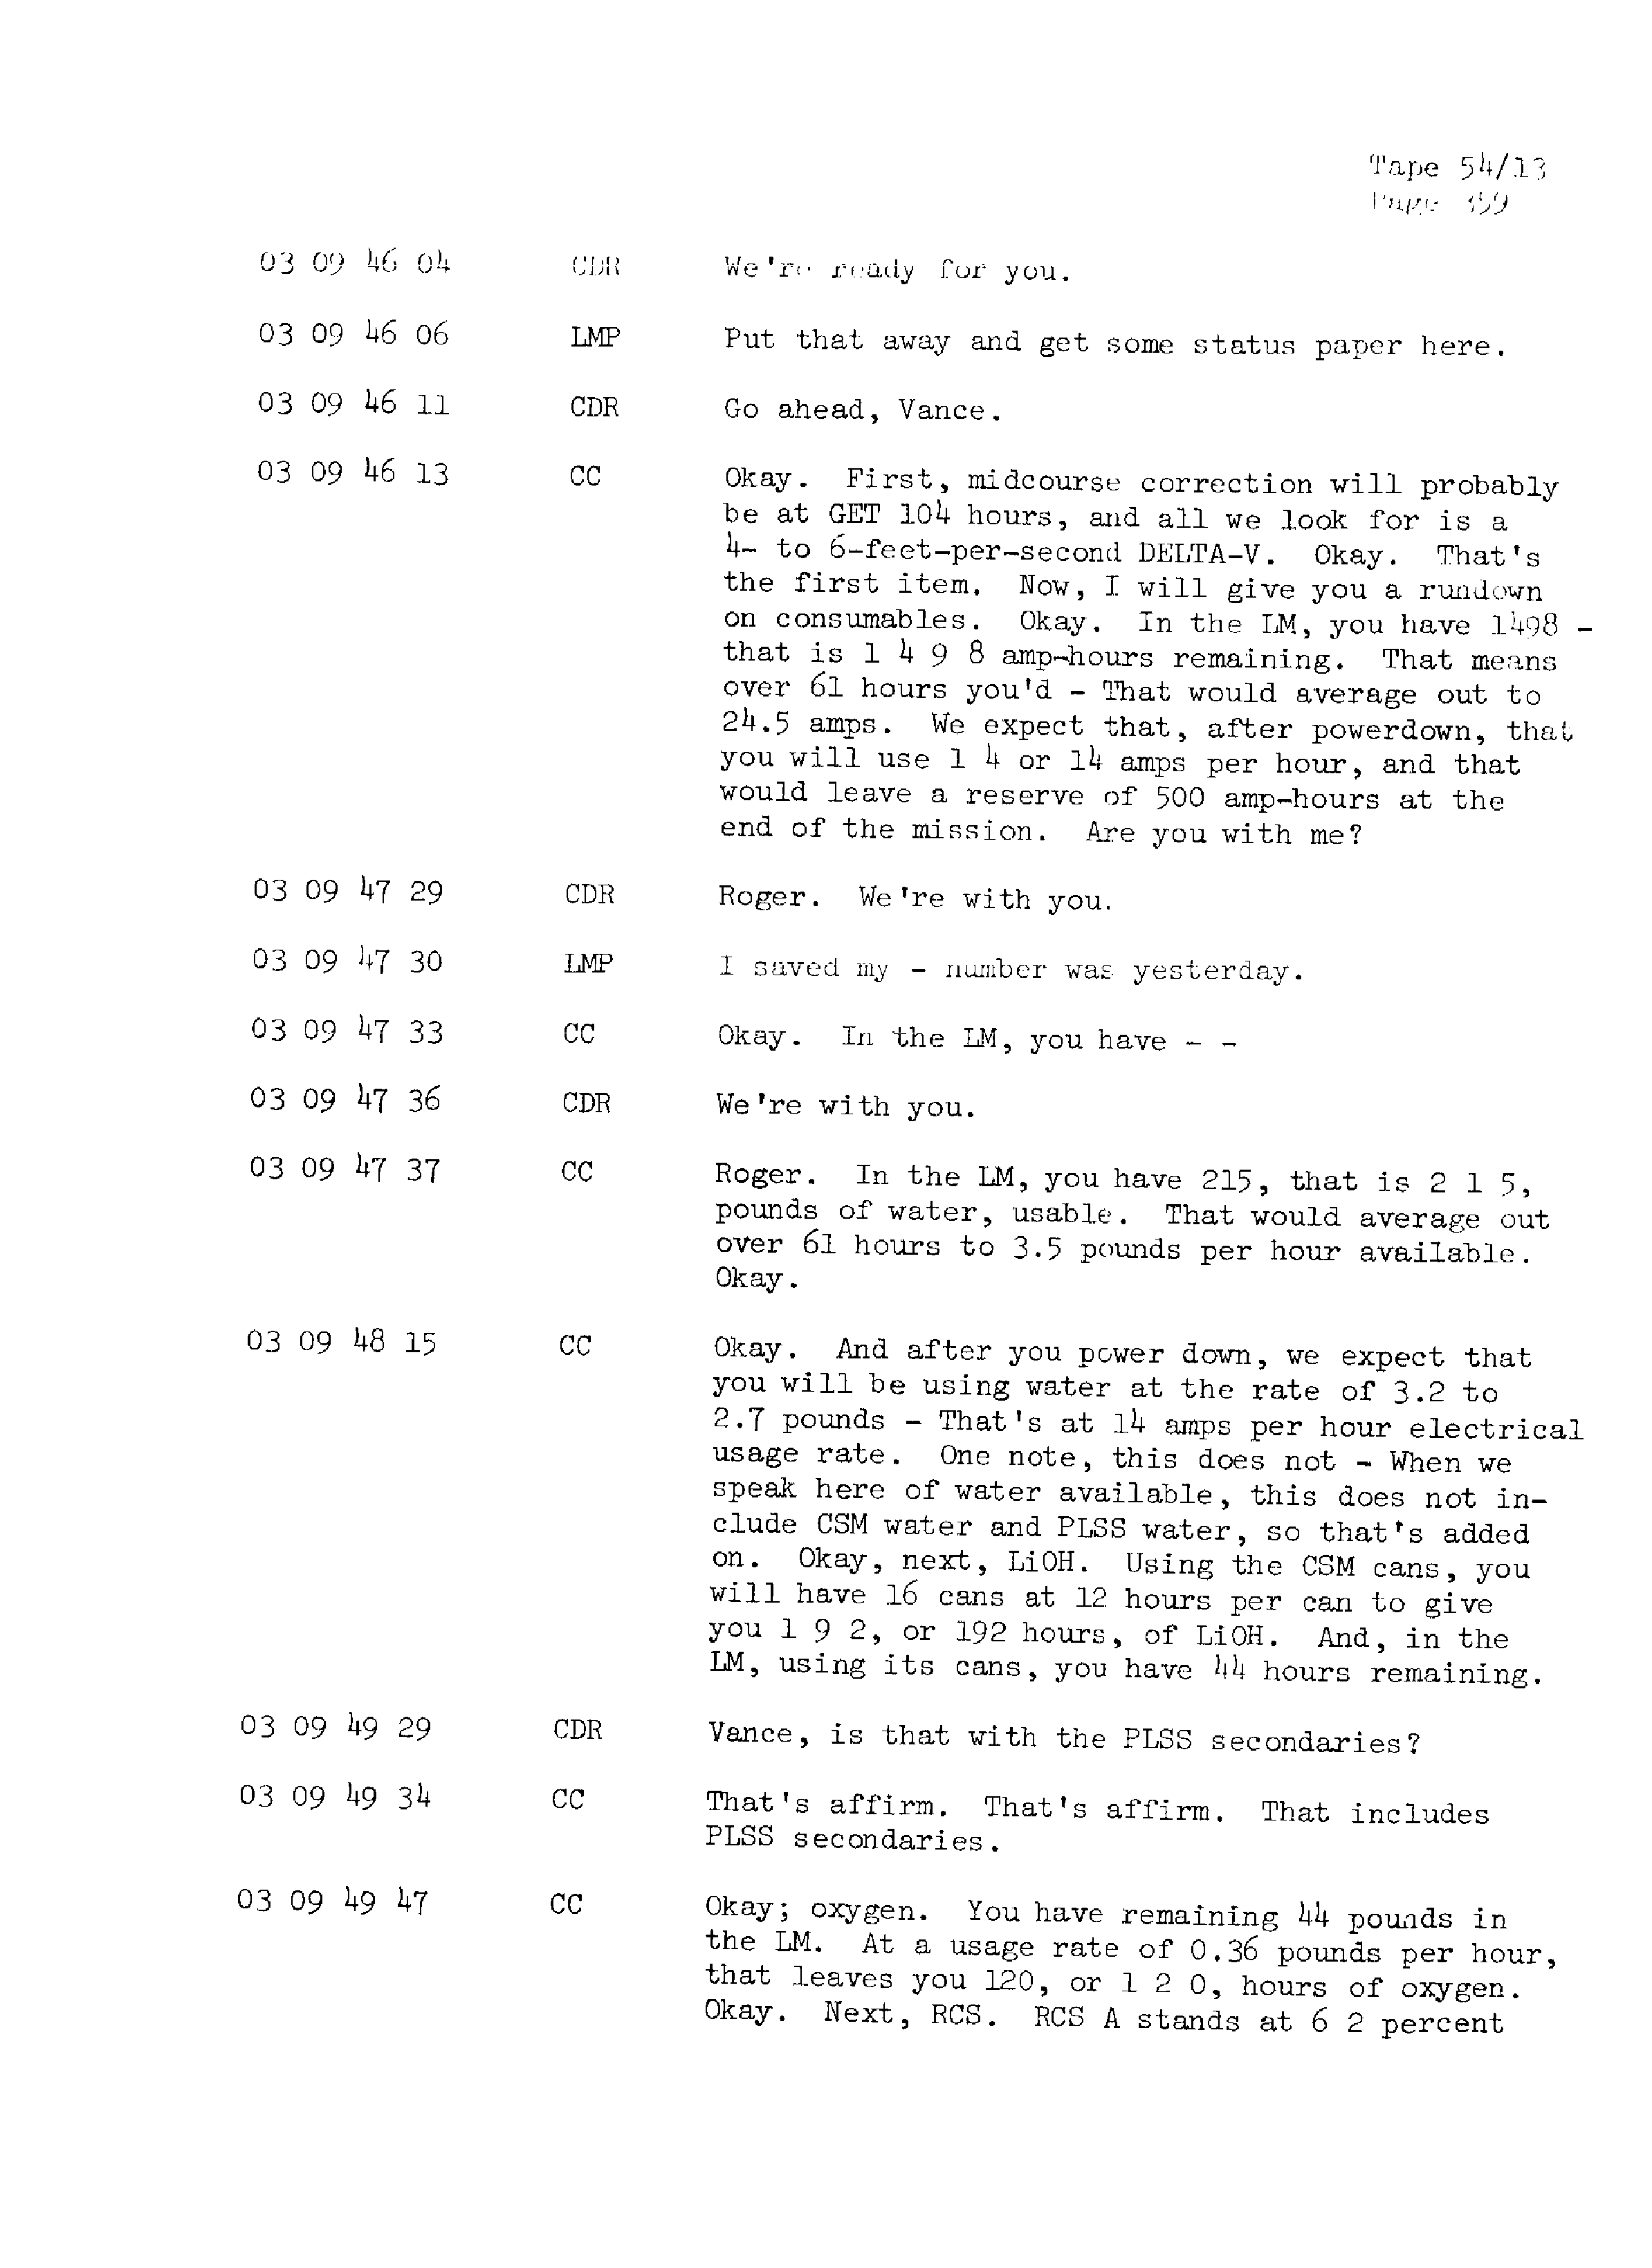 Page 366 of Apollo 13’s original transcript